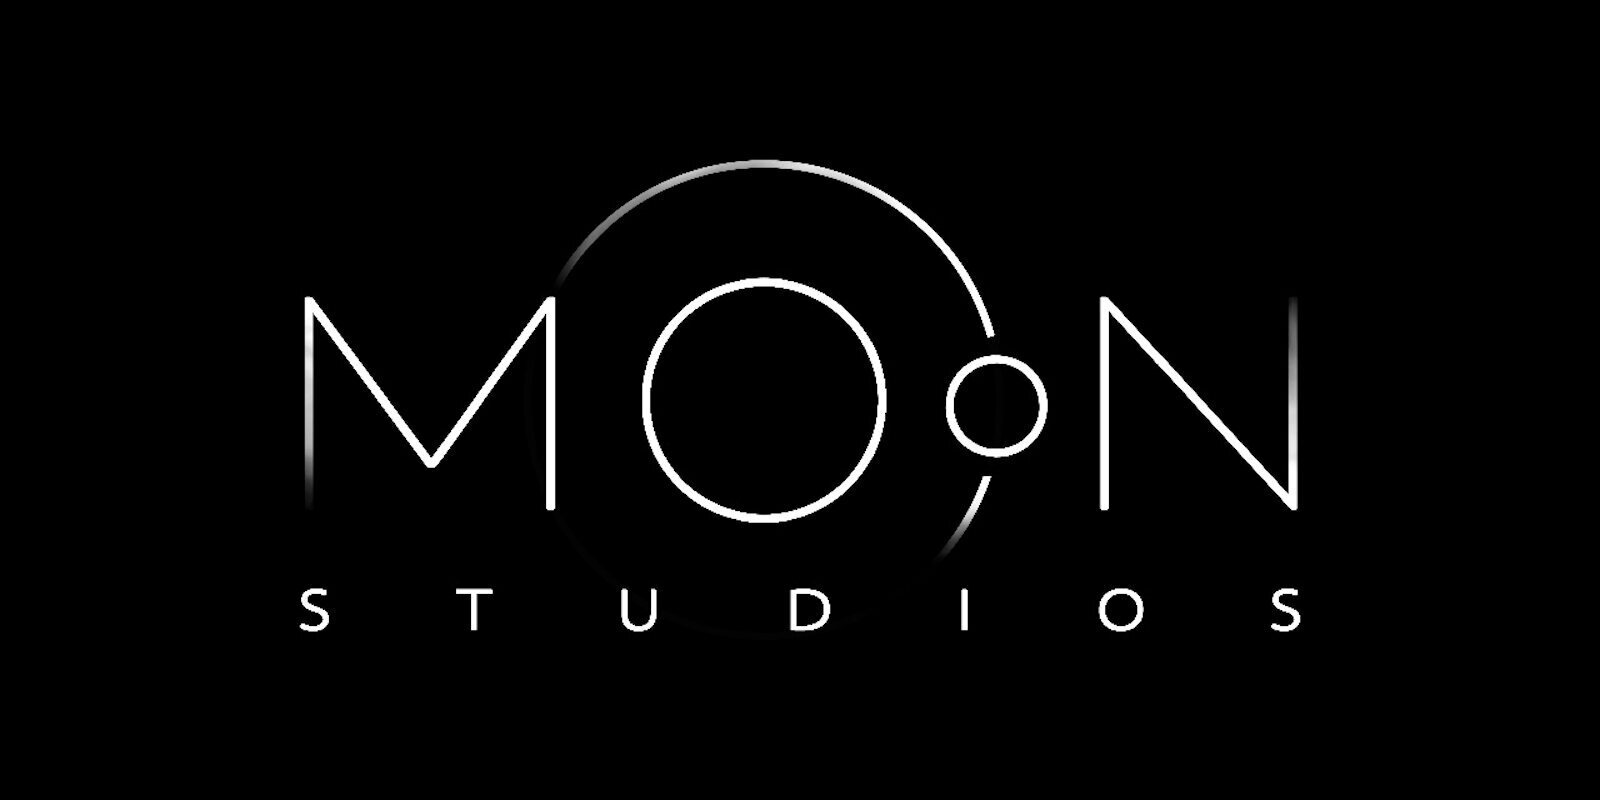 Microsoft podría haber estado al tanto de los problemas de Moon Studios y decidió no publicar su próximo juego